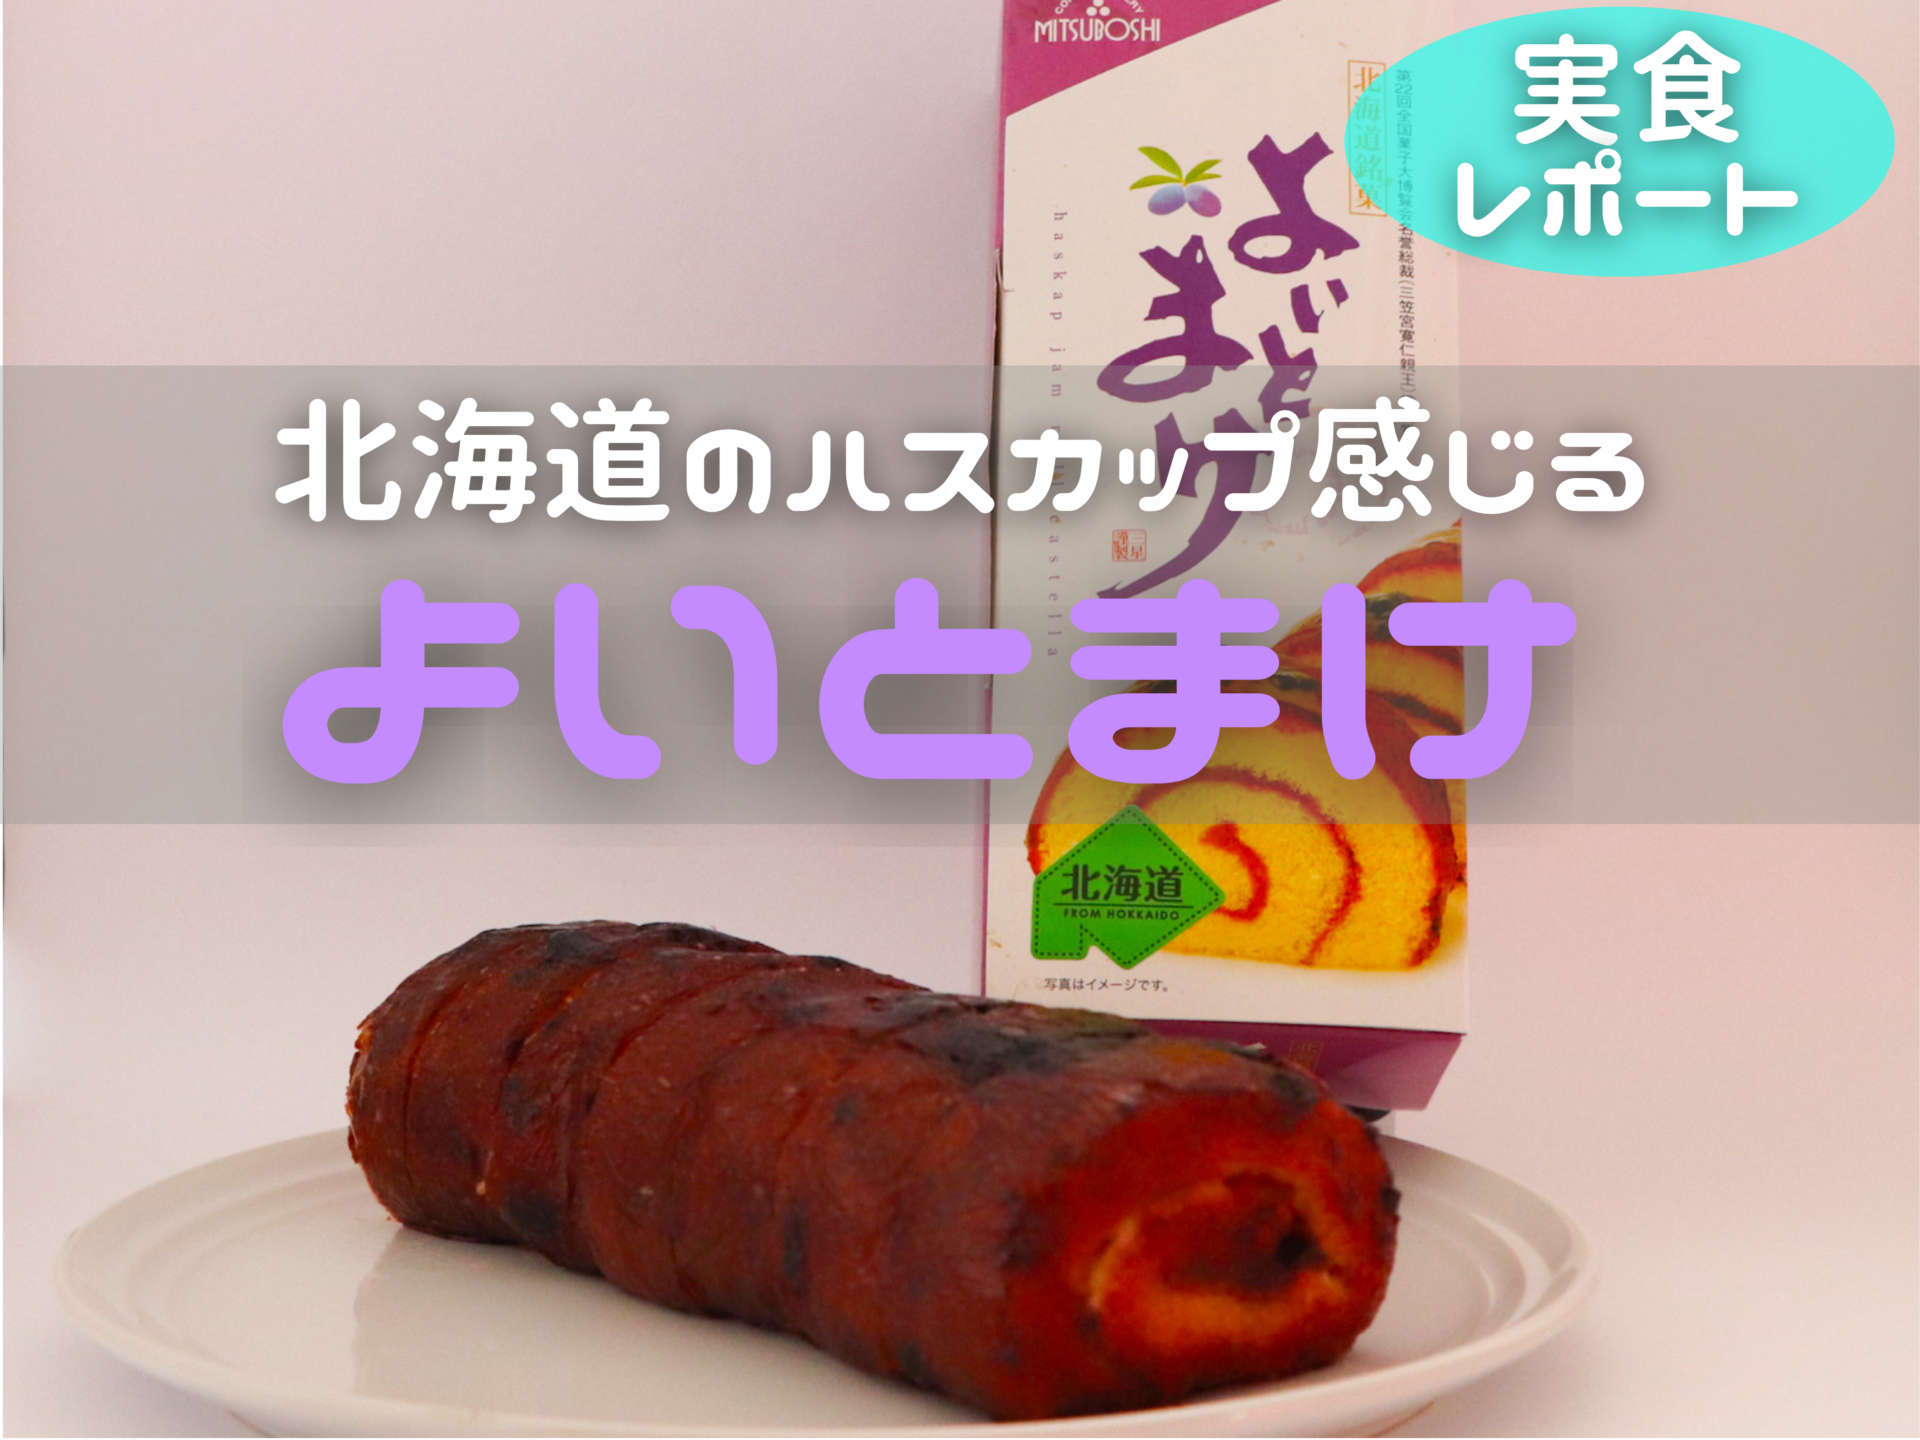 【実食レポ】苫小牧の“日本一食べづらいお菓子”「よいとまけ」